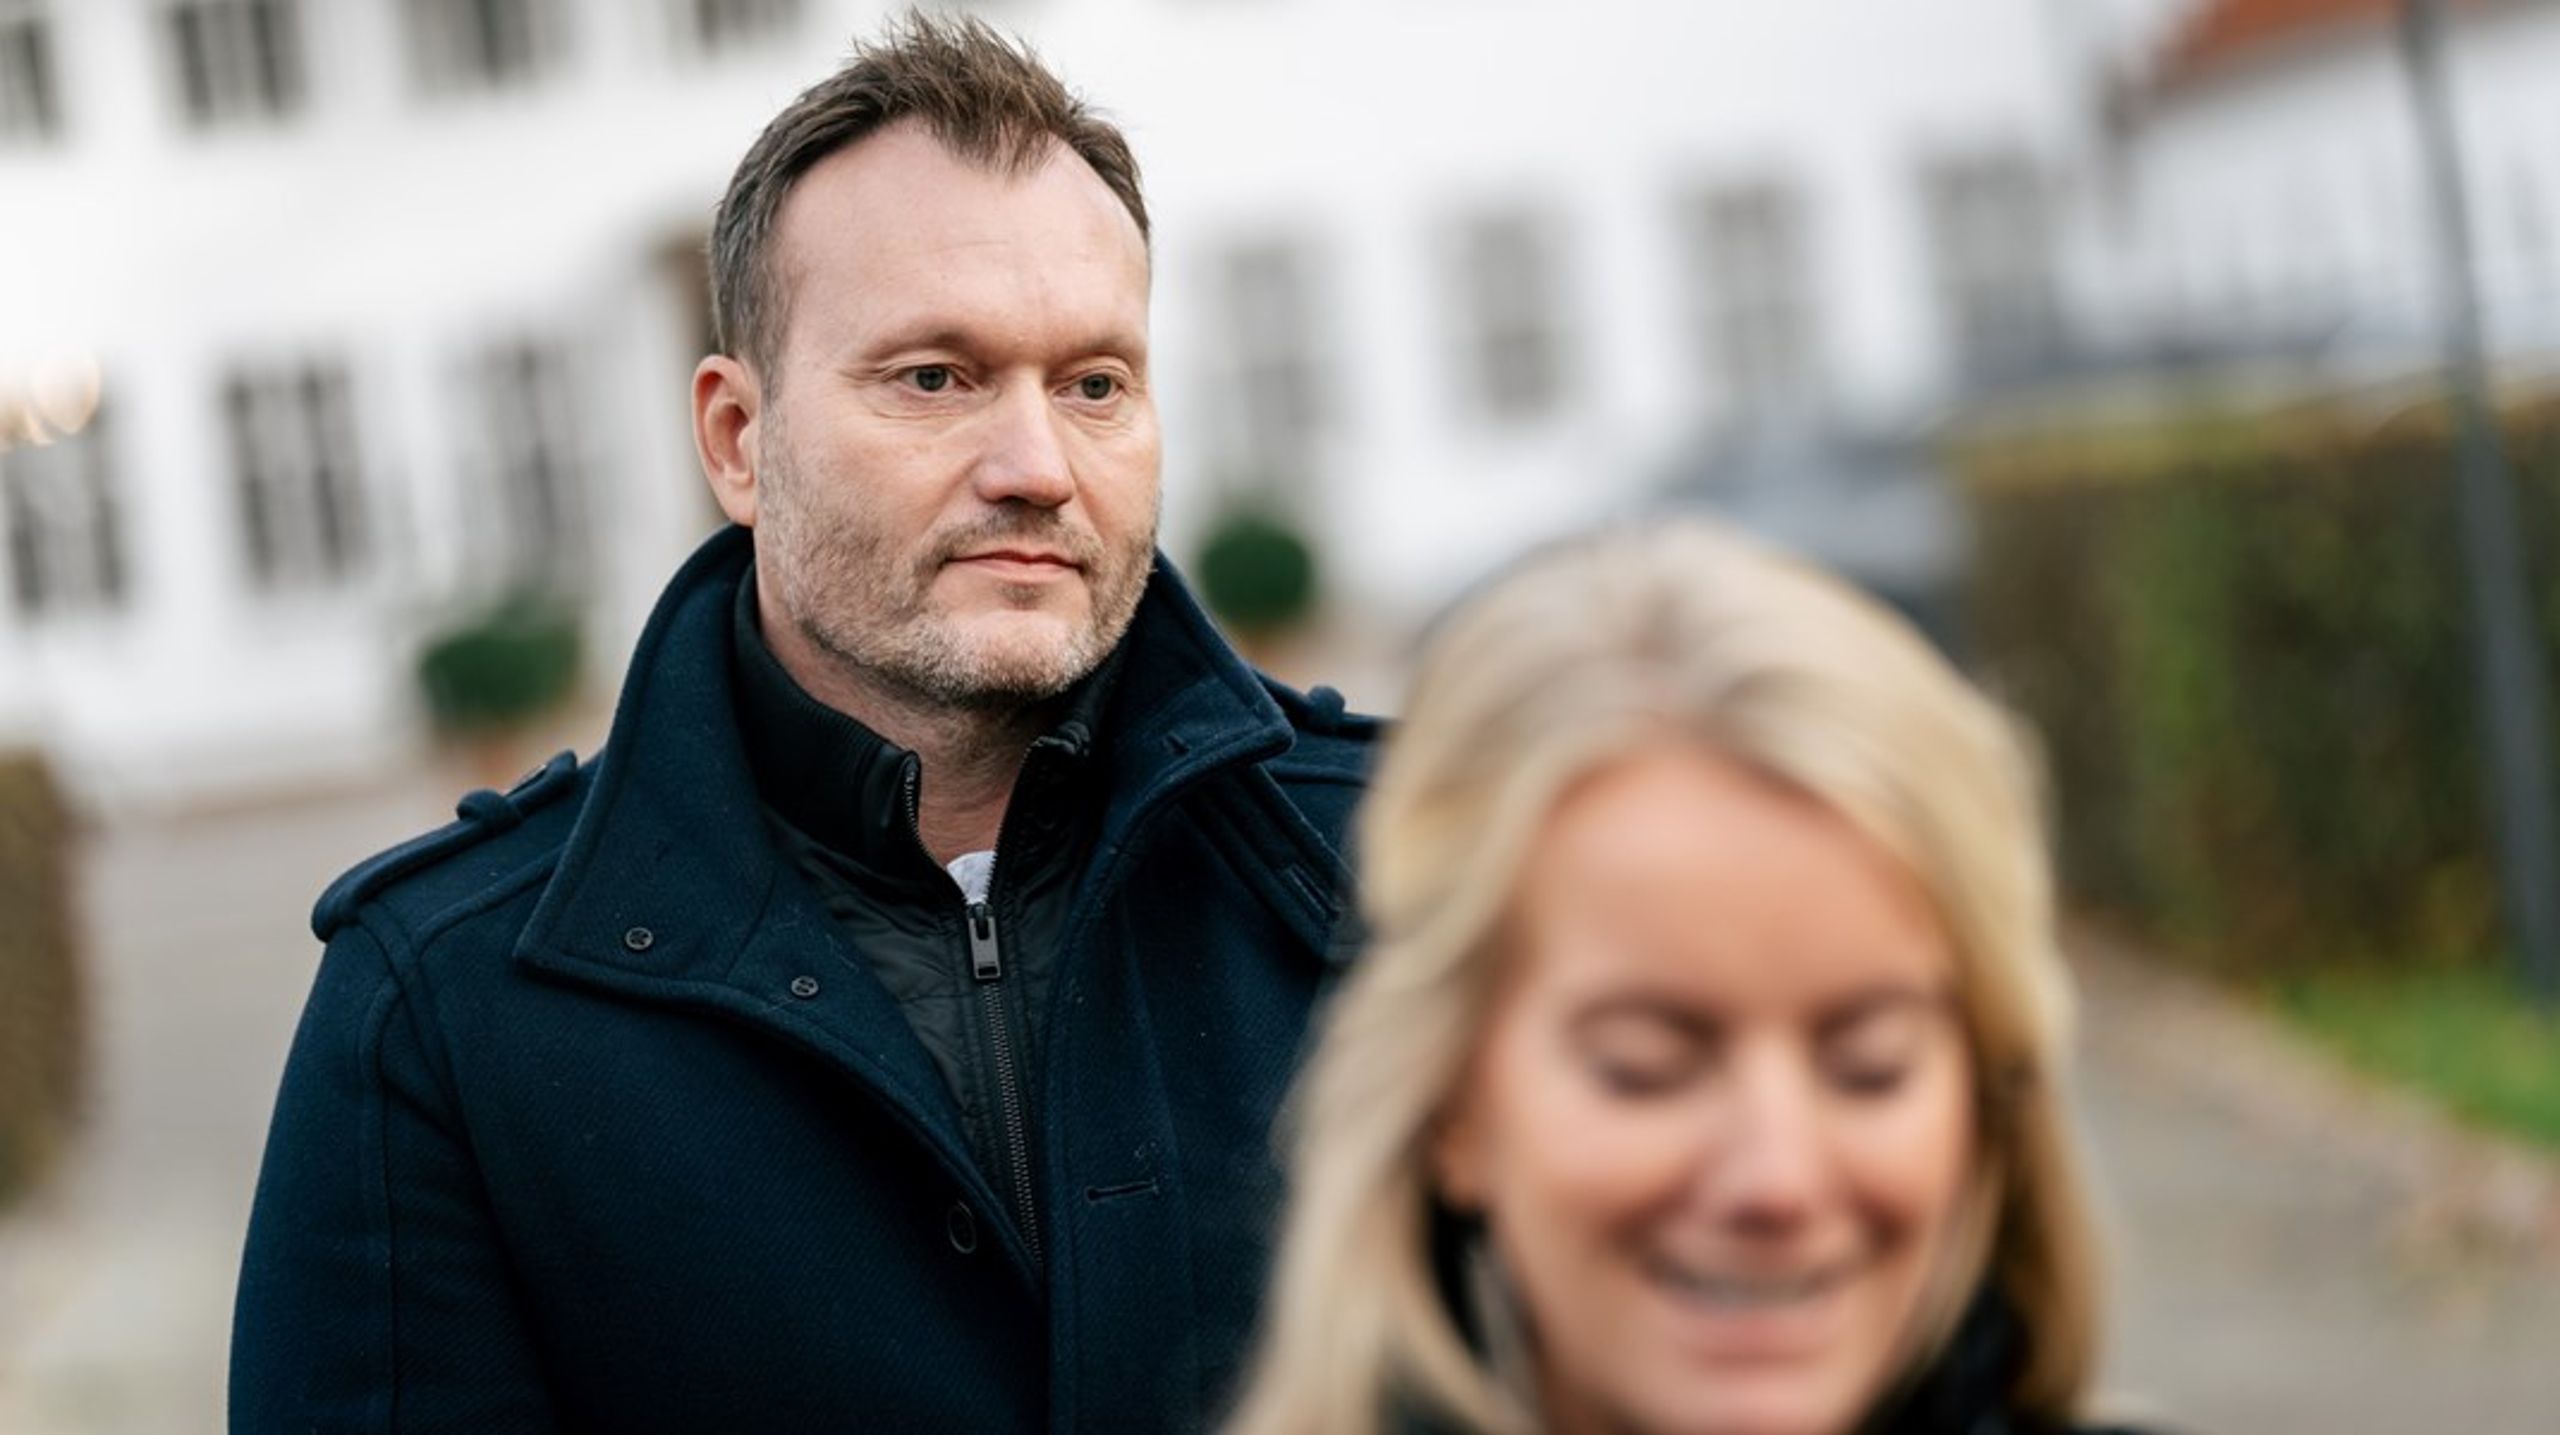 "Lars Boje Mathiesen er den oplagte kandidat, fordi han er populær blandt vælgerne og en enmandshær på Facebook, hvor han opbyggede et stort følgeskab via sin kritik af coronarestriktionerne," vurderer politisk redaktør Esben Schjørring.